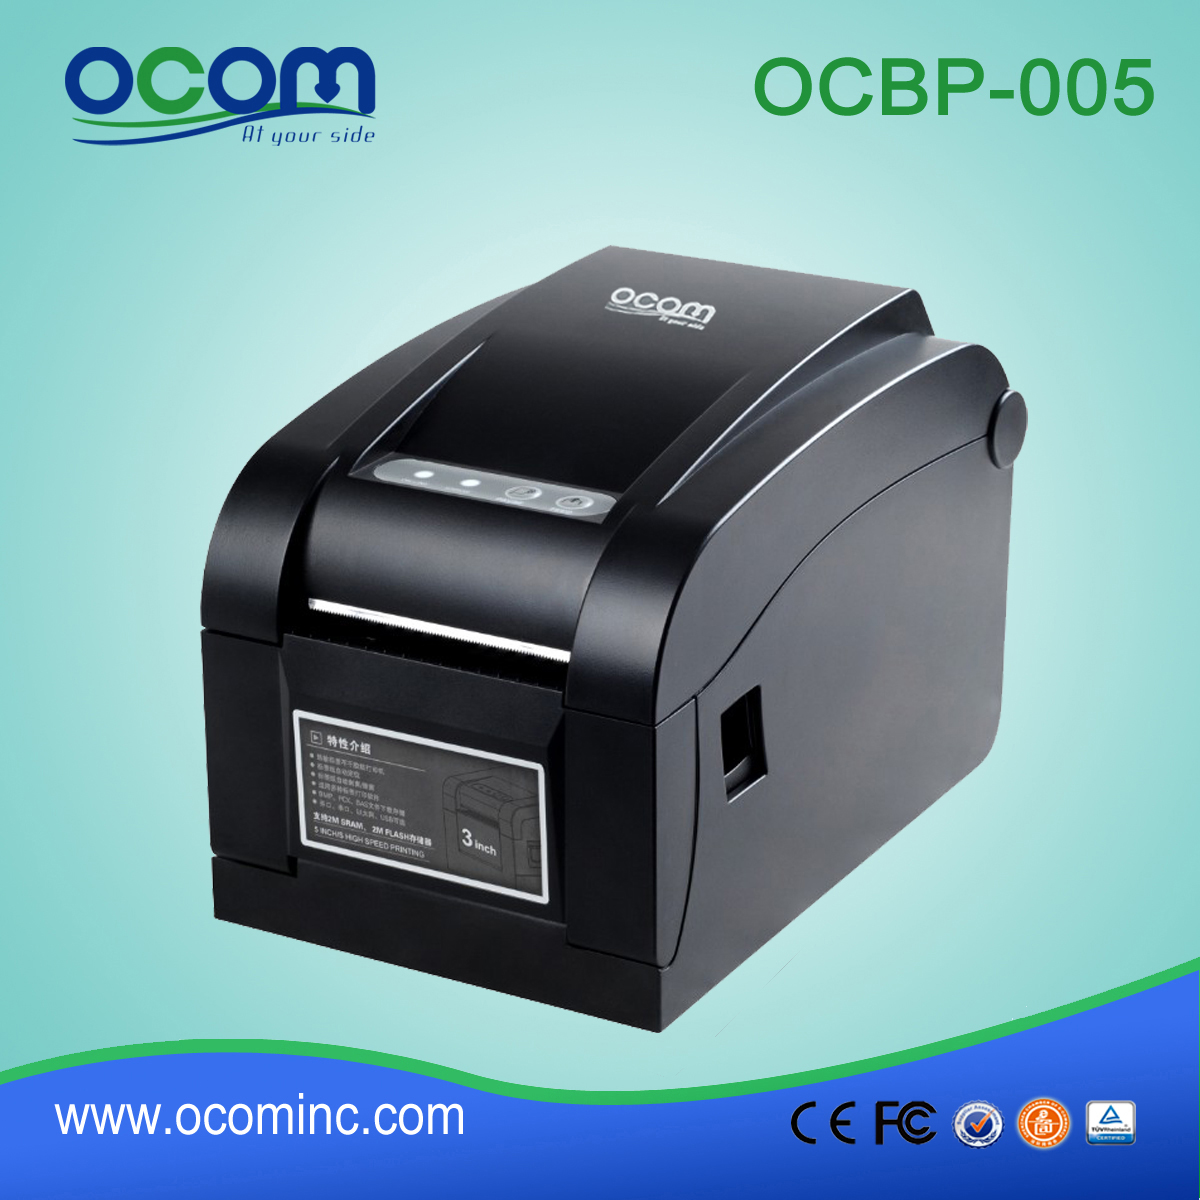 OCBP -005-URL 3英寸宽度纸张热敏条码标签打印机具有剥离功能